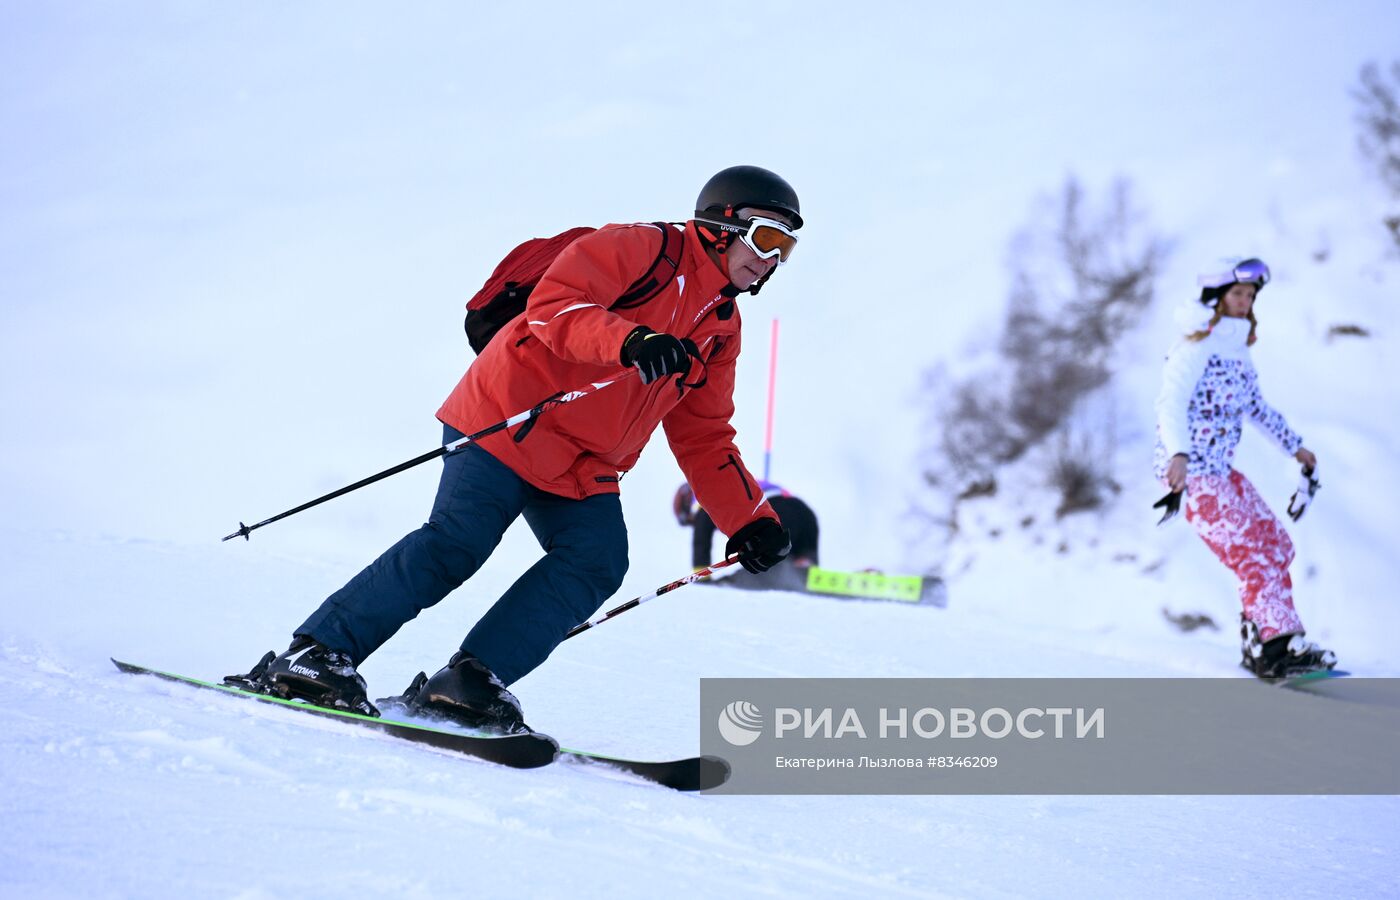 Старт горнолыжного сезона на курорте Красная поляна